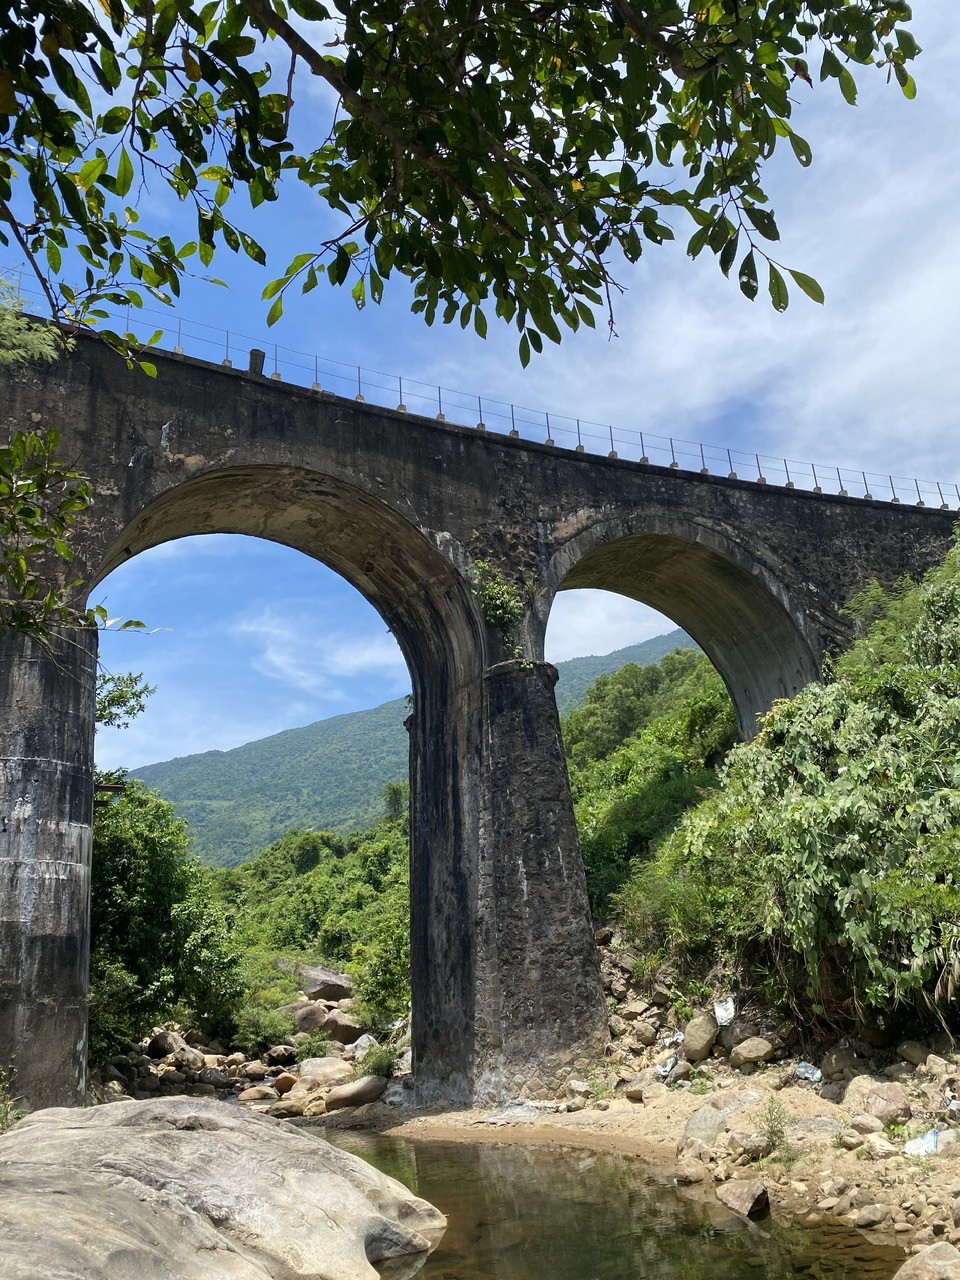 Cây cầu vòm đường sắt hơn 100 tuổi giữa rừng già nối Huế - Đà Nẵng thu hút tín đồ ưa check in "độc, lạ"